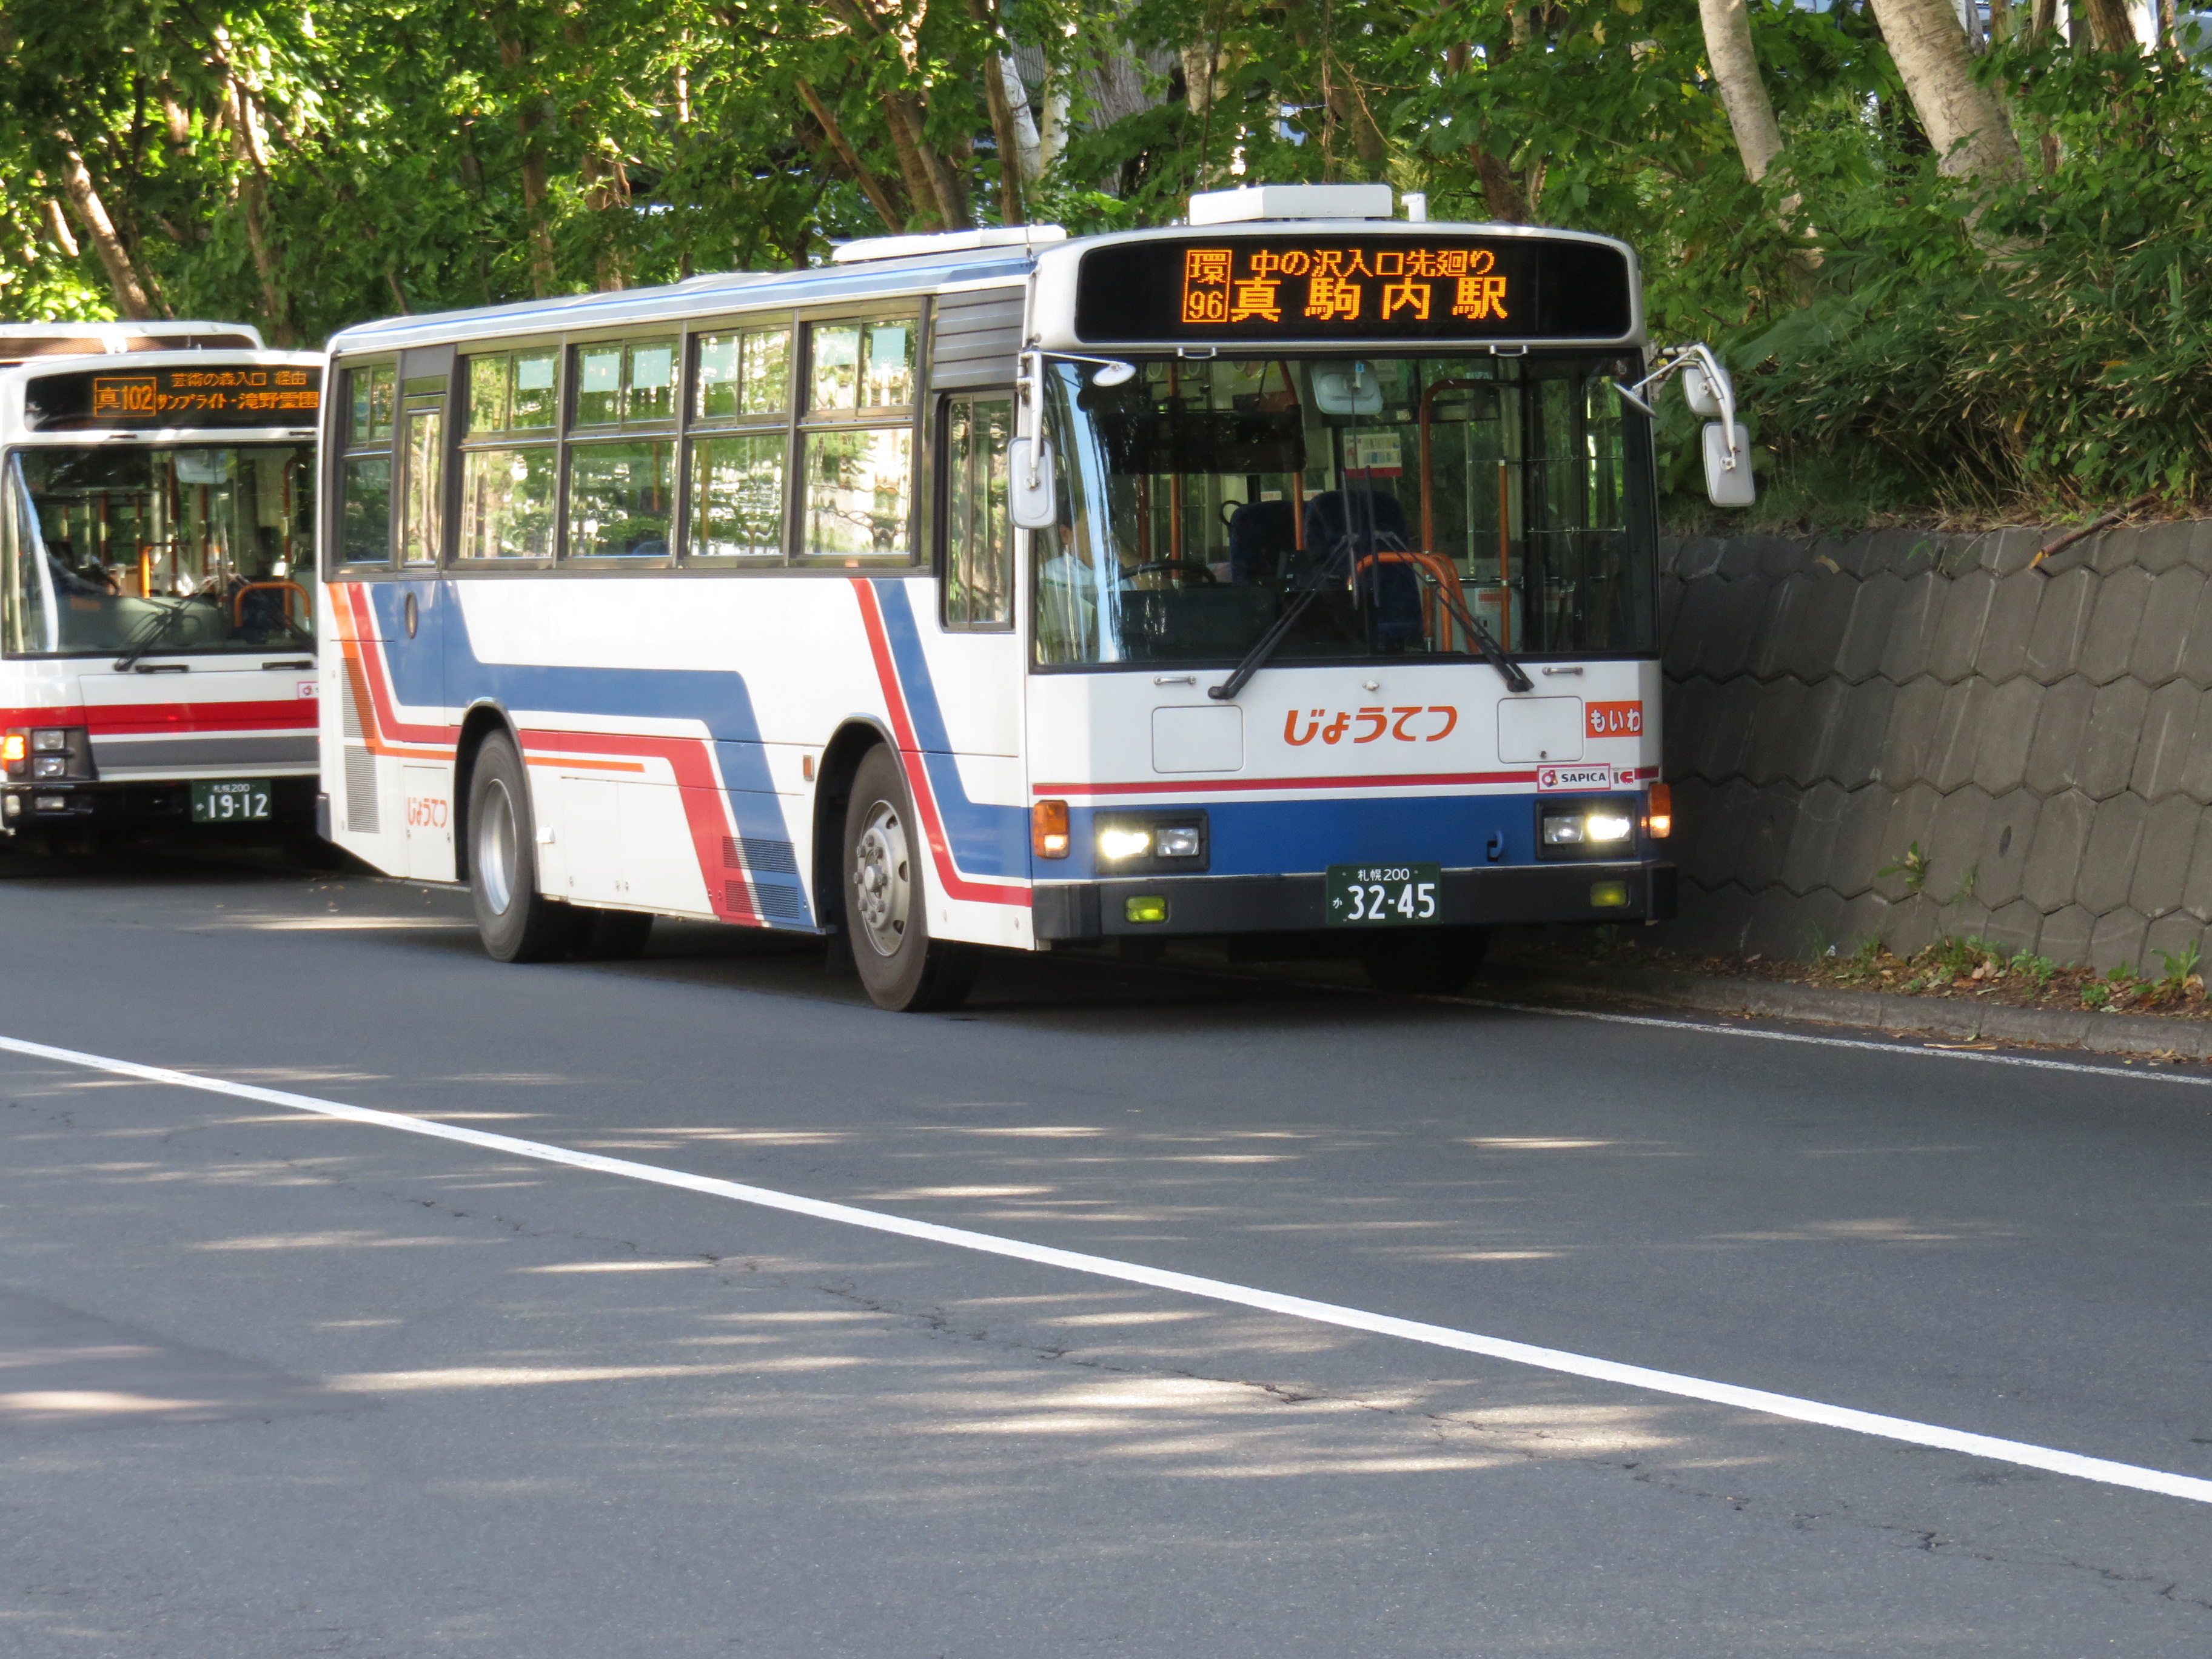 じょうてつバス 札幌0 か32 45 あるみくふぉとらいぶらりー